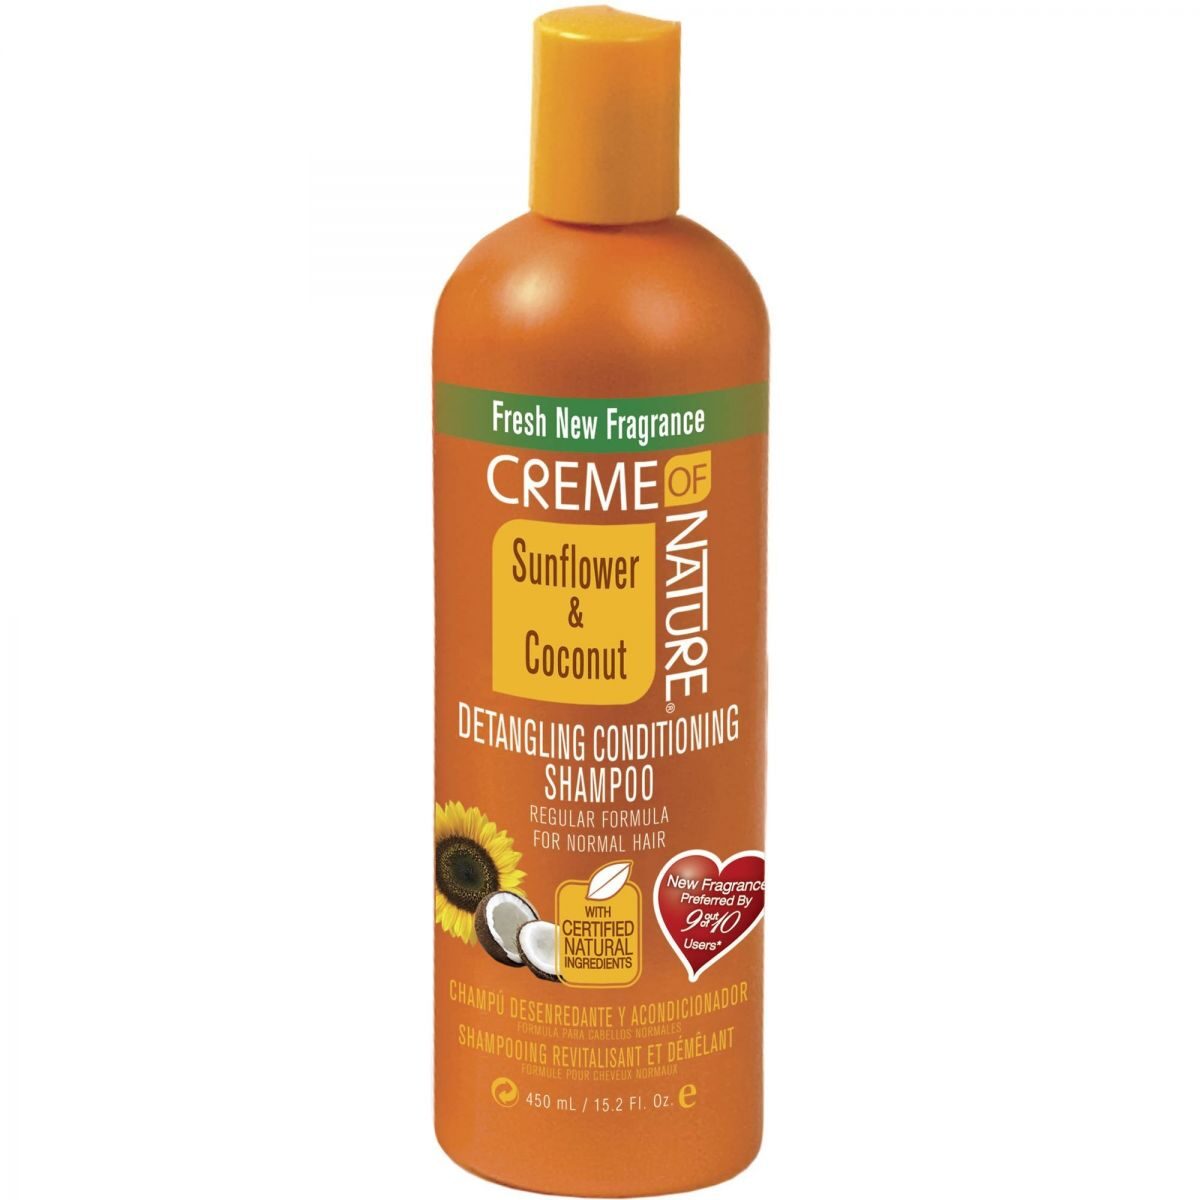 Crema della natura girasole e cocco shampoo condizionante detagamente 32 oz